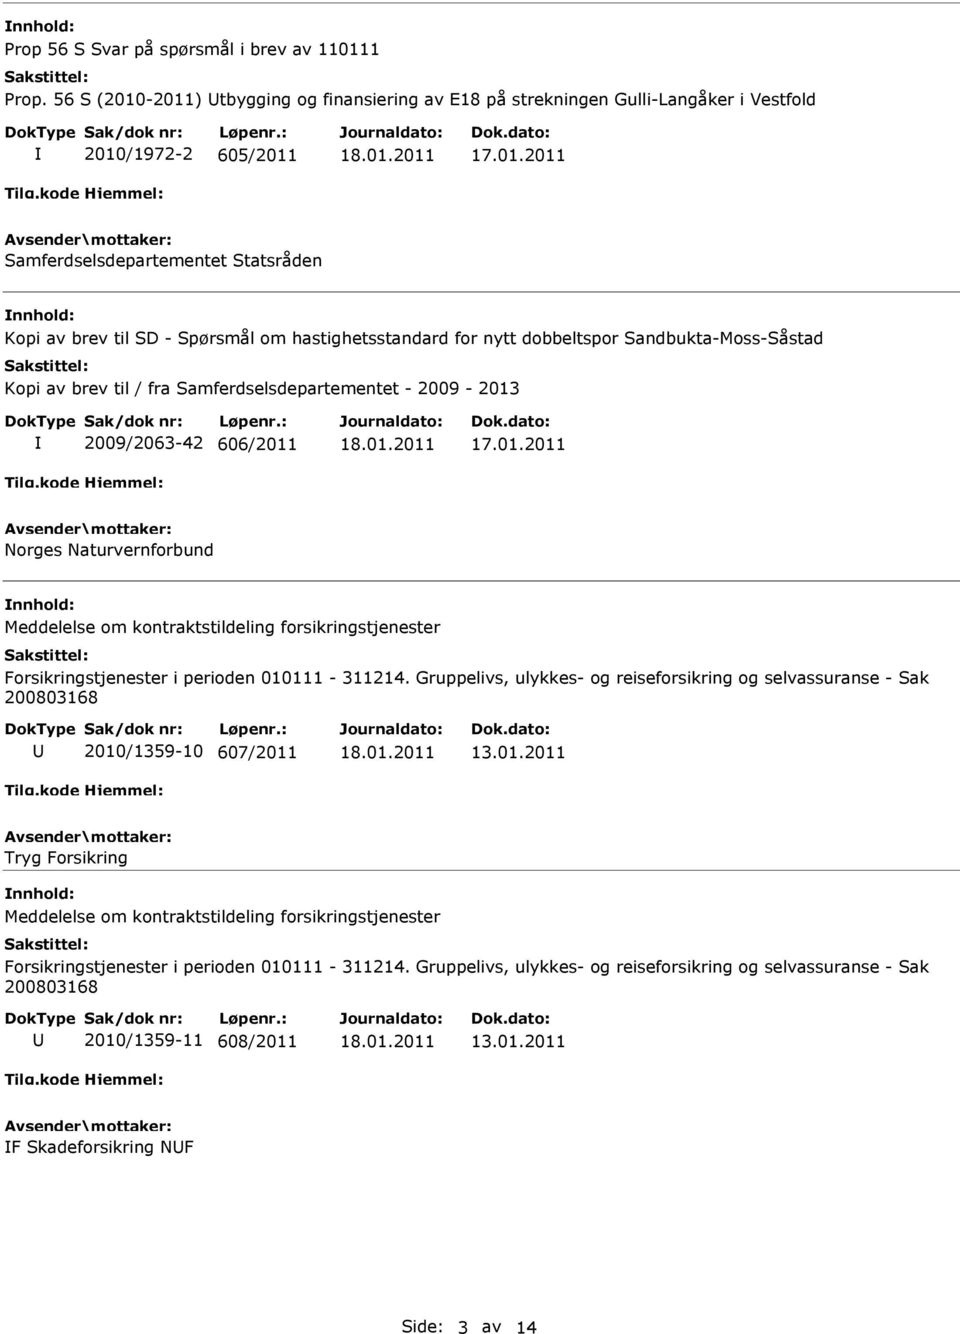 for nytt dobbeltspor Sandbukta-Moss-Såstad Kopi av brev til / fra Samferdselsdepartementet - 2009-2013 2009/2063-42 606/2011 Norges Naturvernforbund Meddelelse om kontraktstildeling